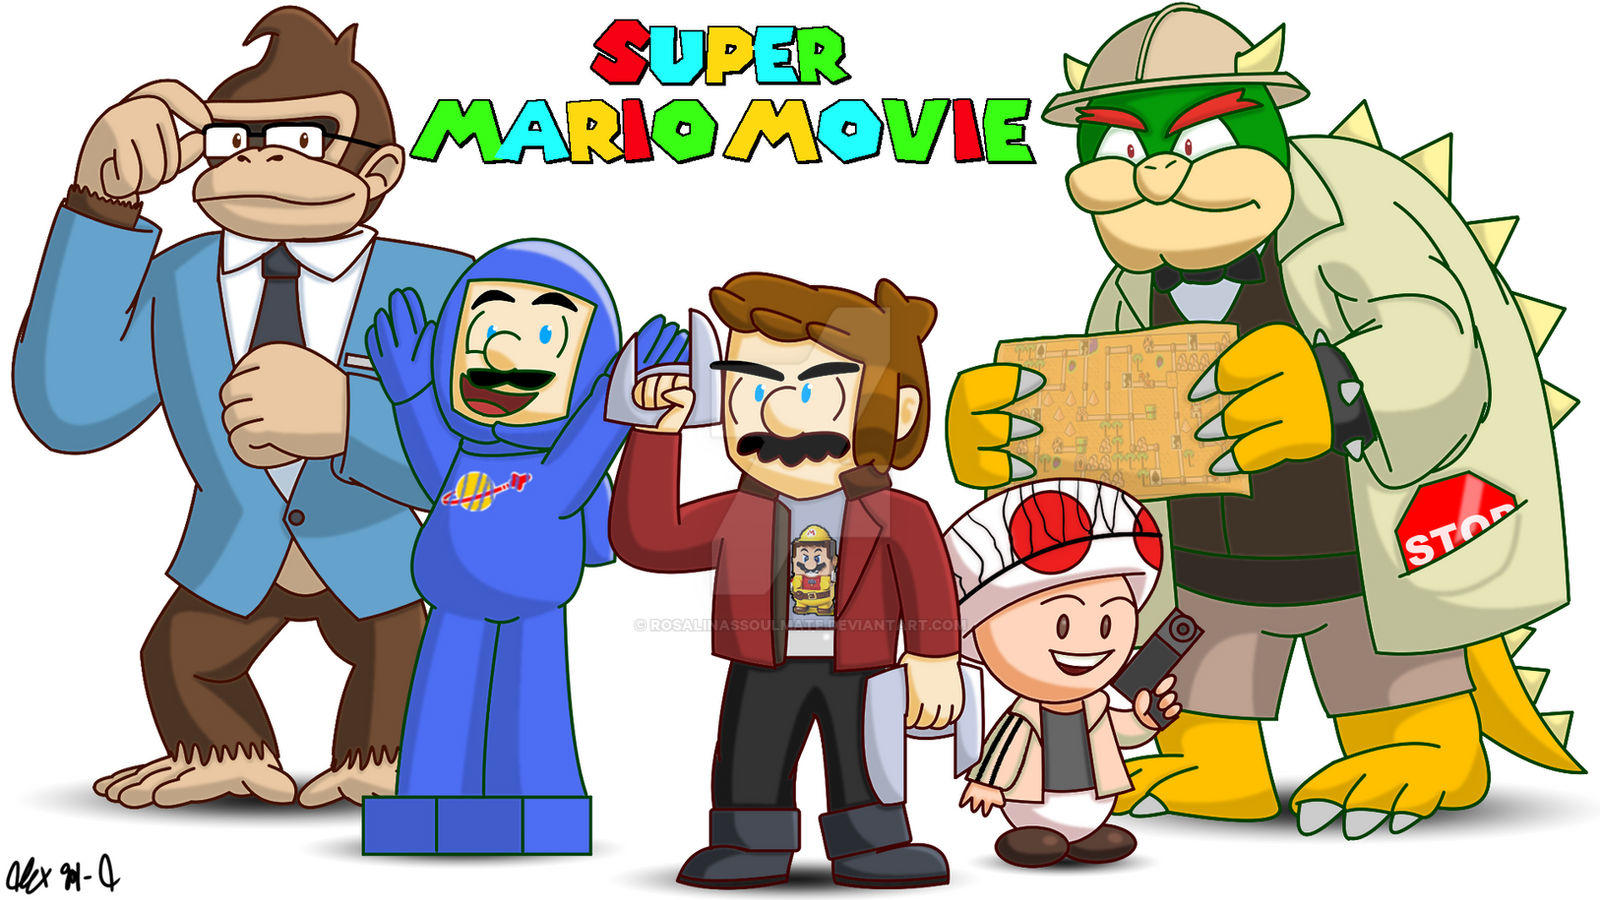 Mario Movie Mashup. Untitled Super Mario Bros. Film